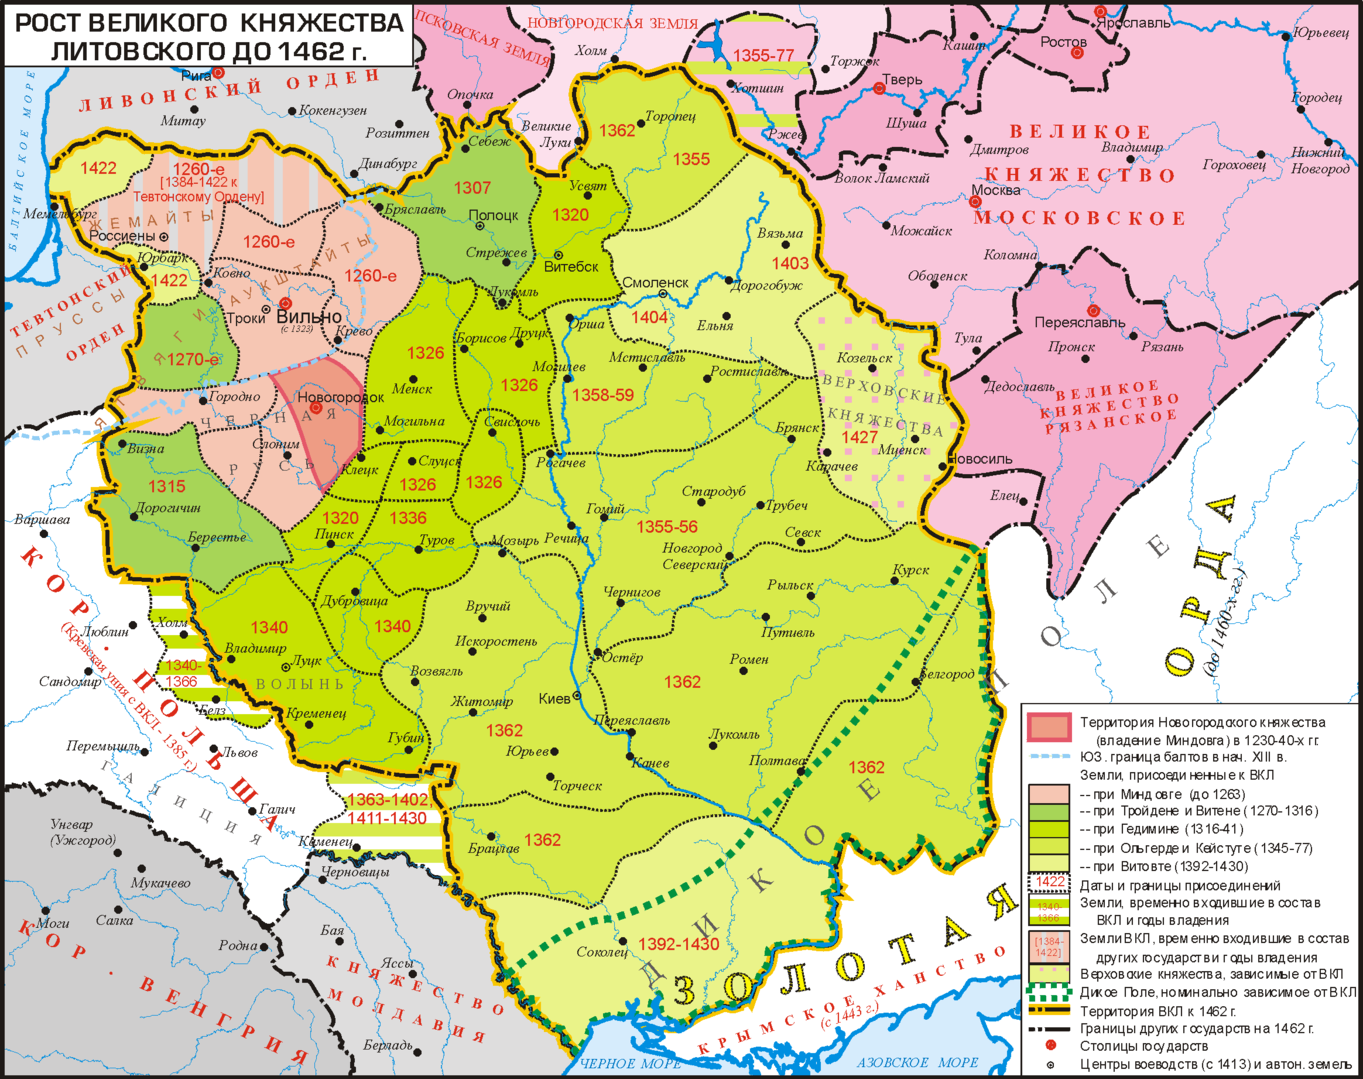 Рост Великого Княжества Литовского до 1462 года